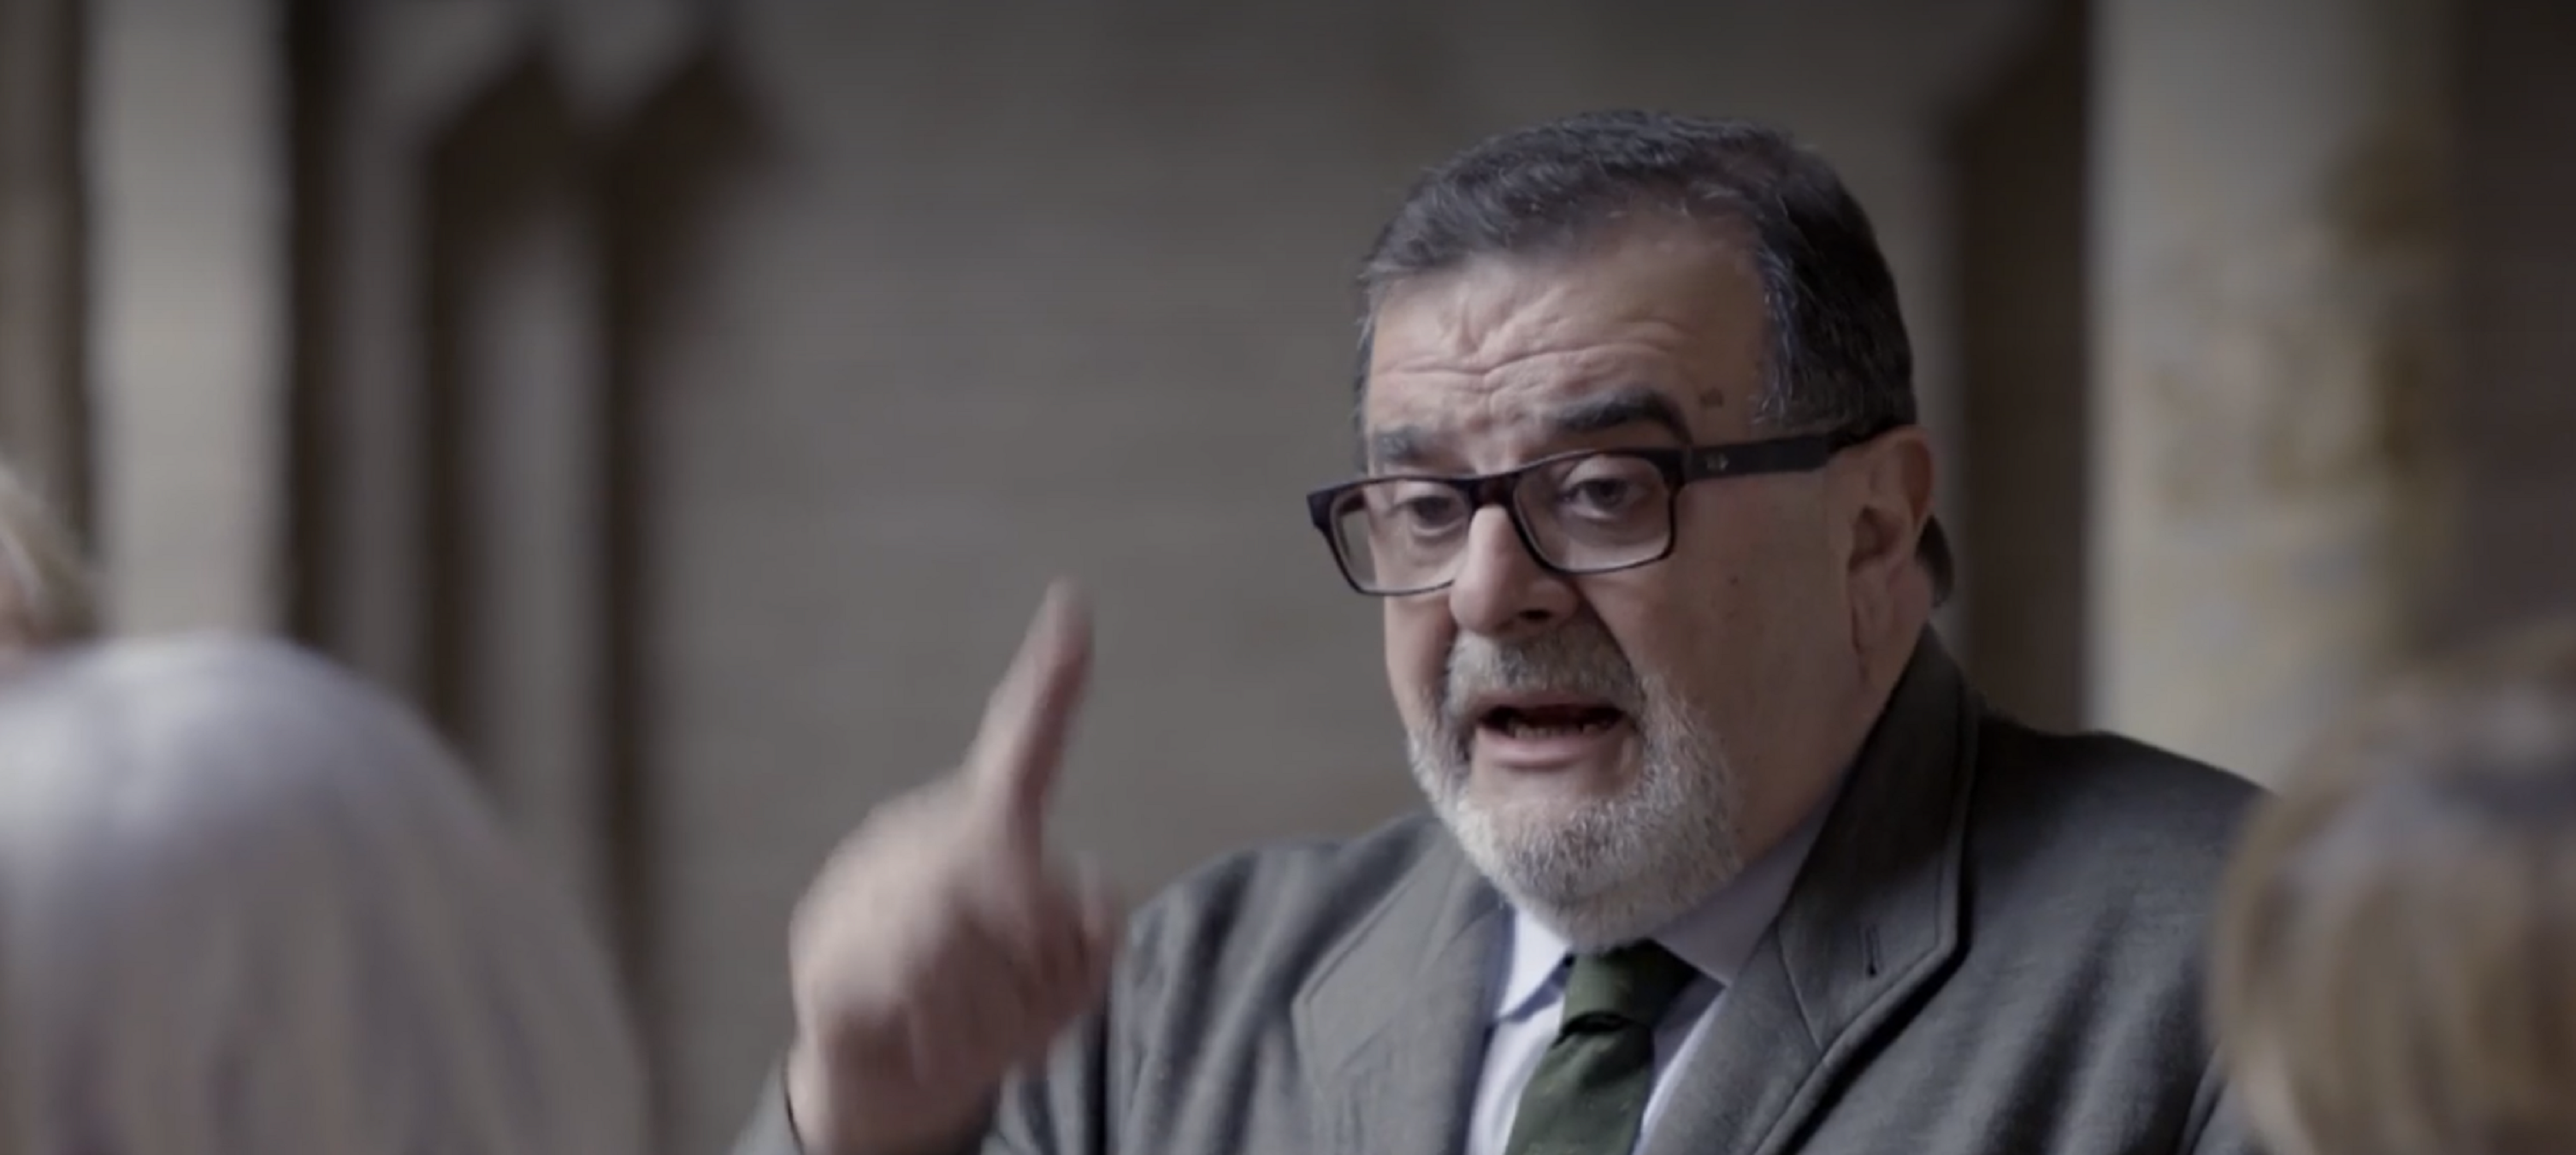 El expresidente de Andalucía a las yayas catalanas: "Puigdemont es un cerdo"